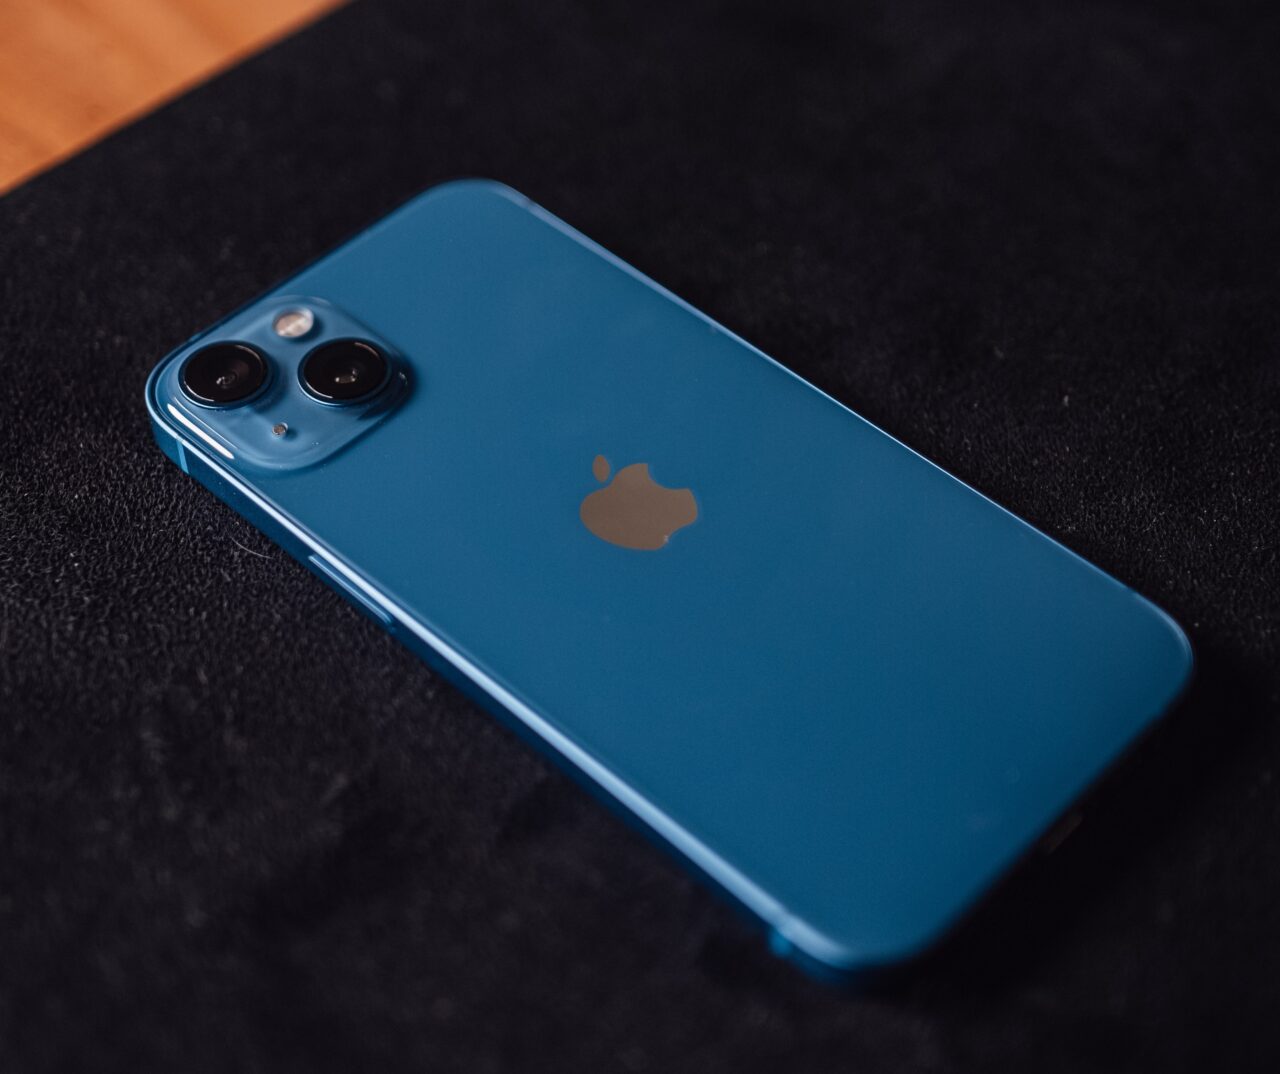 Niebieski iPhone leżący na czarnej powierzchni.